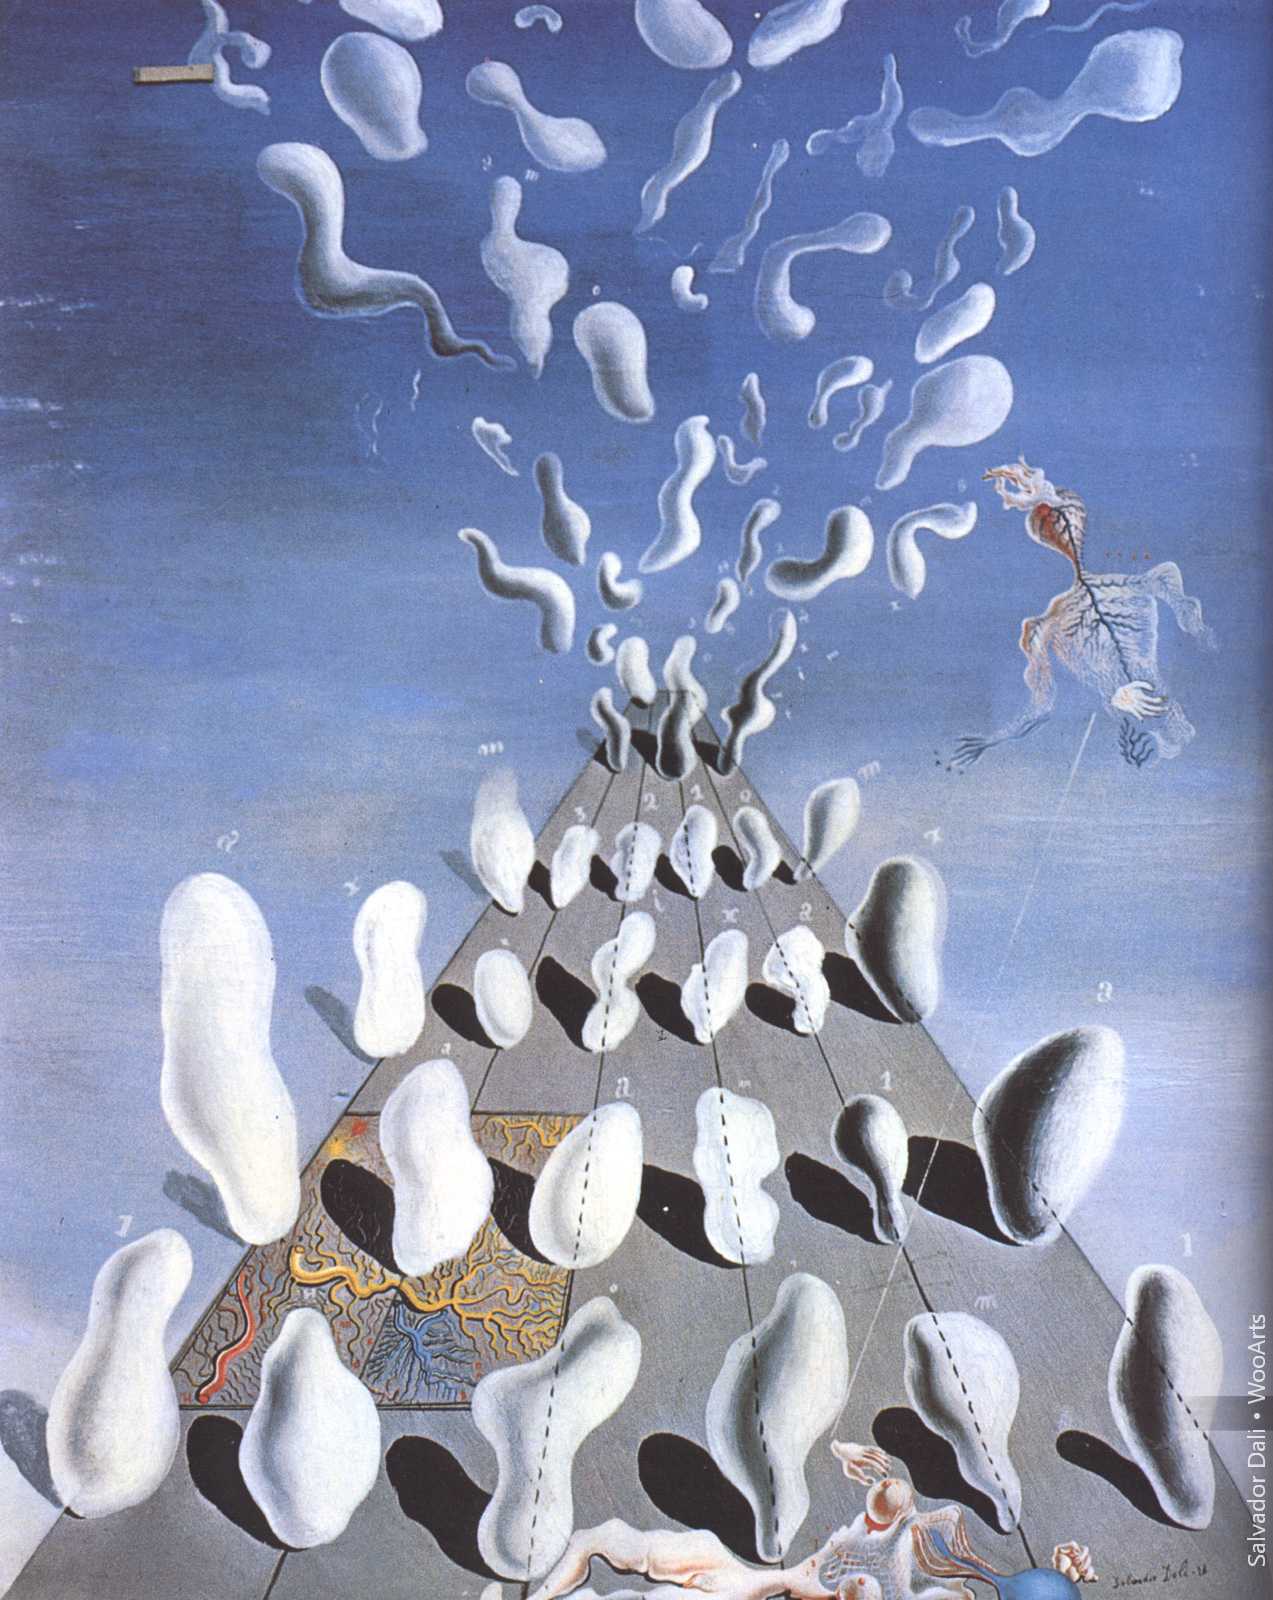 Salvador Dali Painting 144